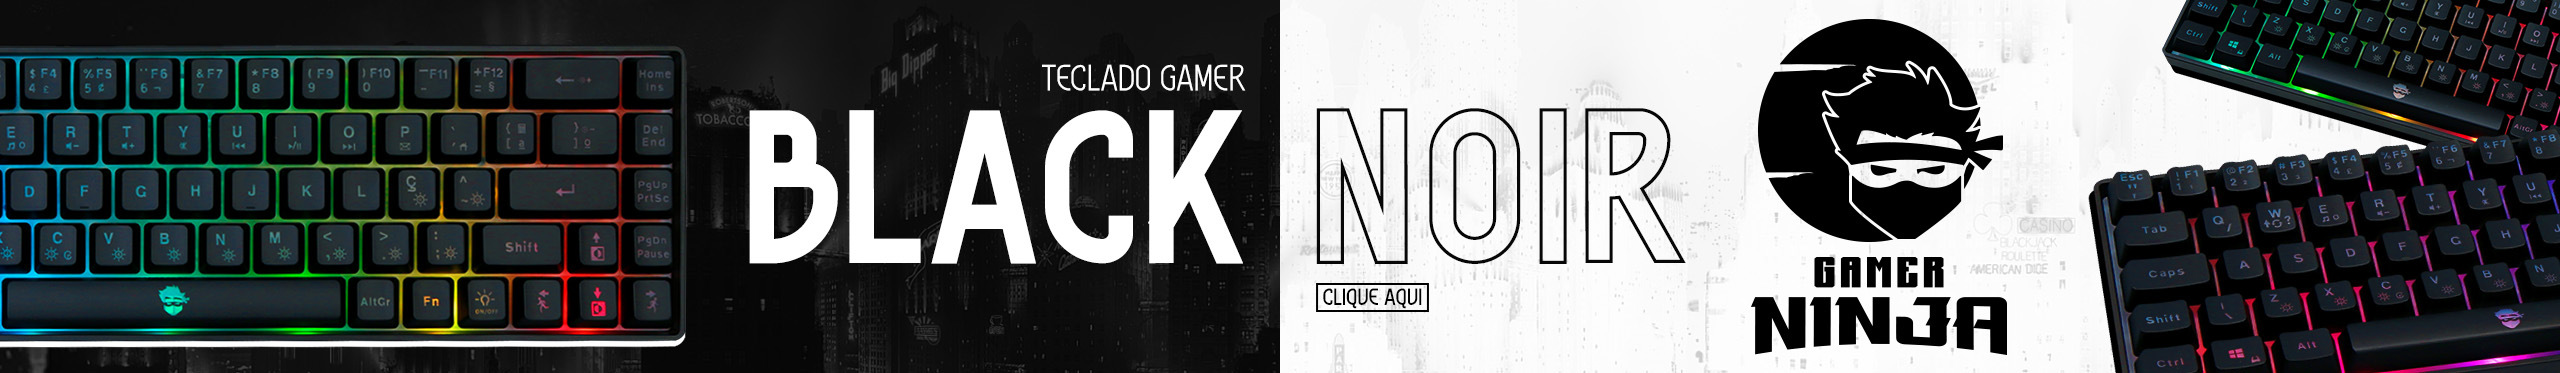 Teclado Gamer Ninja Black Noir | Maior conforto durante a gameplay. Saiba mais!